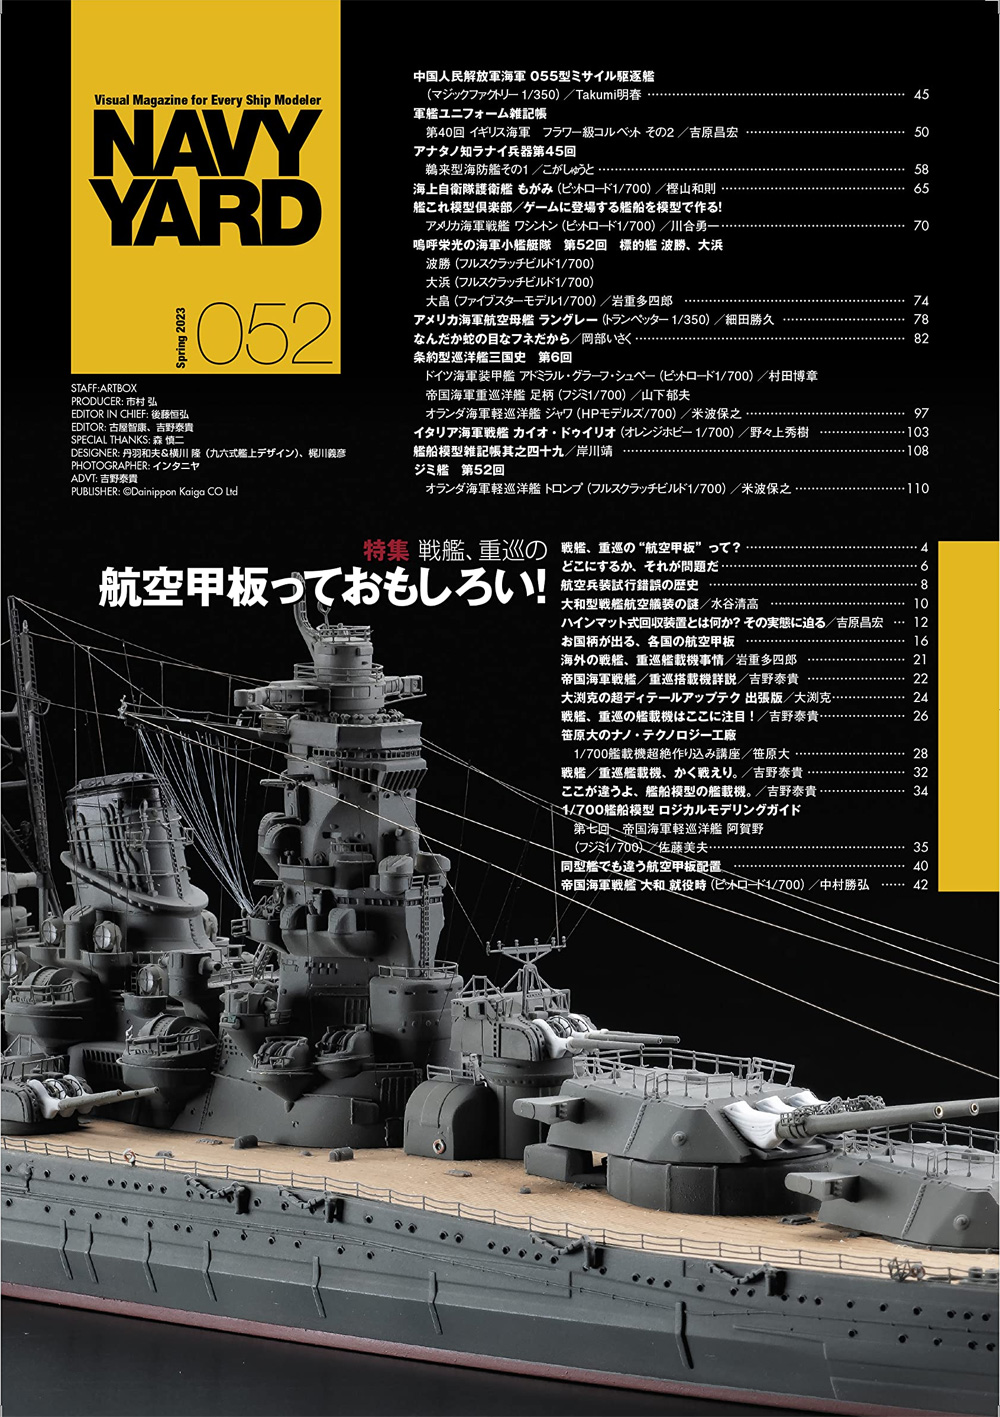 ネイビーヤード Vol.52 戦艦、重巡の航空甲板っておもしろい！ 本 (大日本絵画 ネイビーヤード No.Vol.052) 商品画像_1